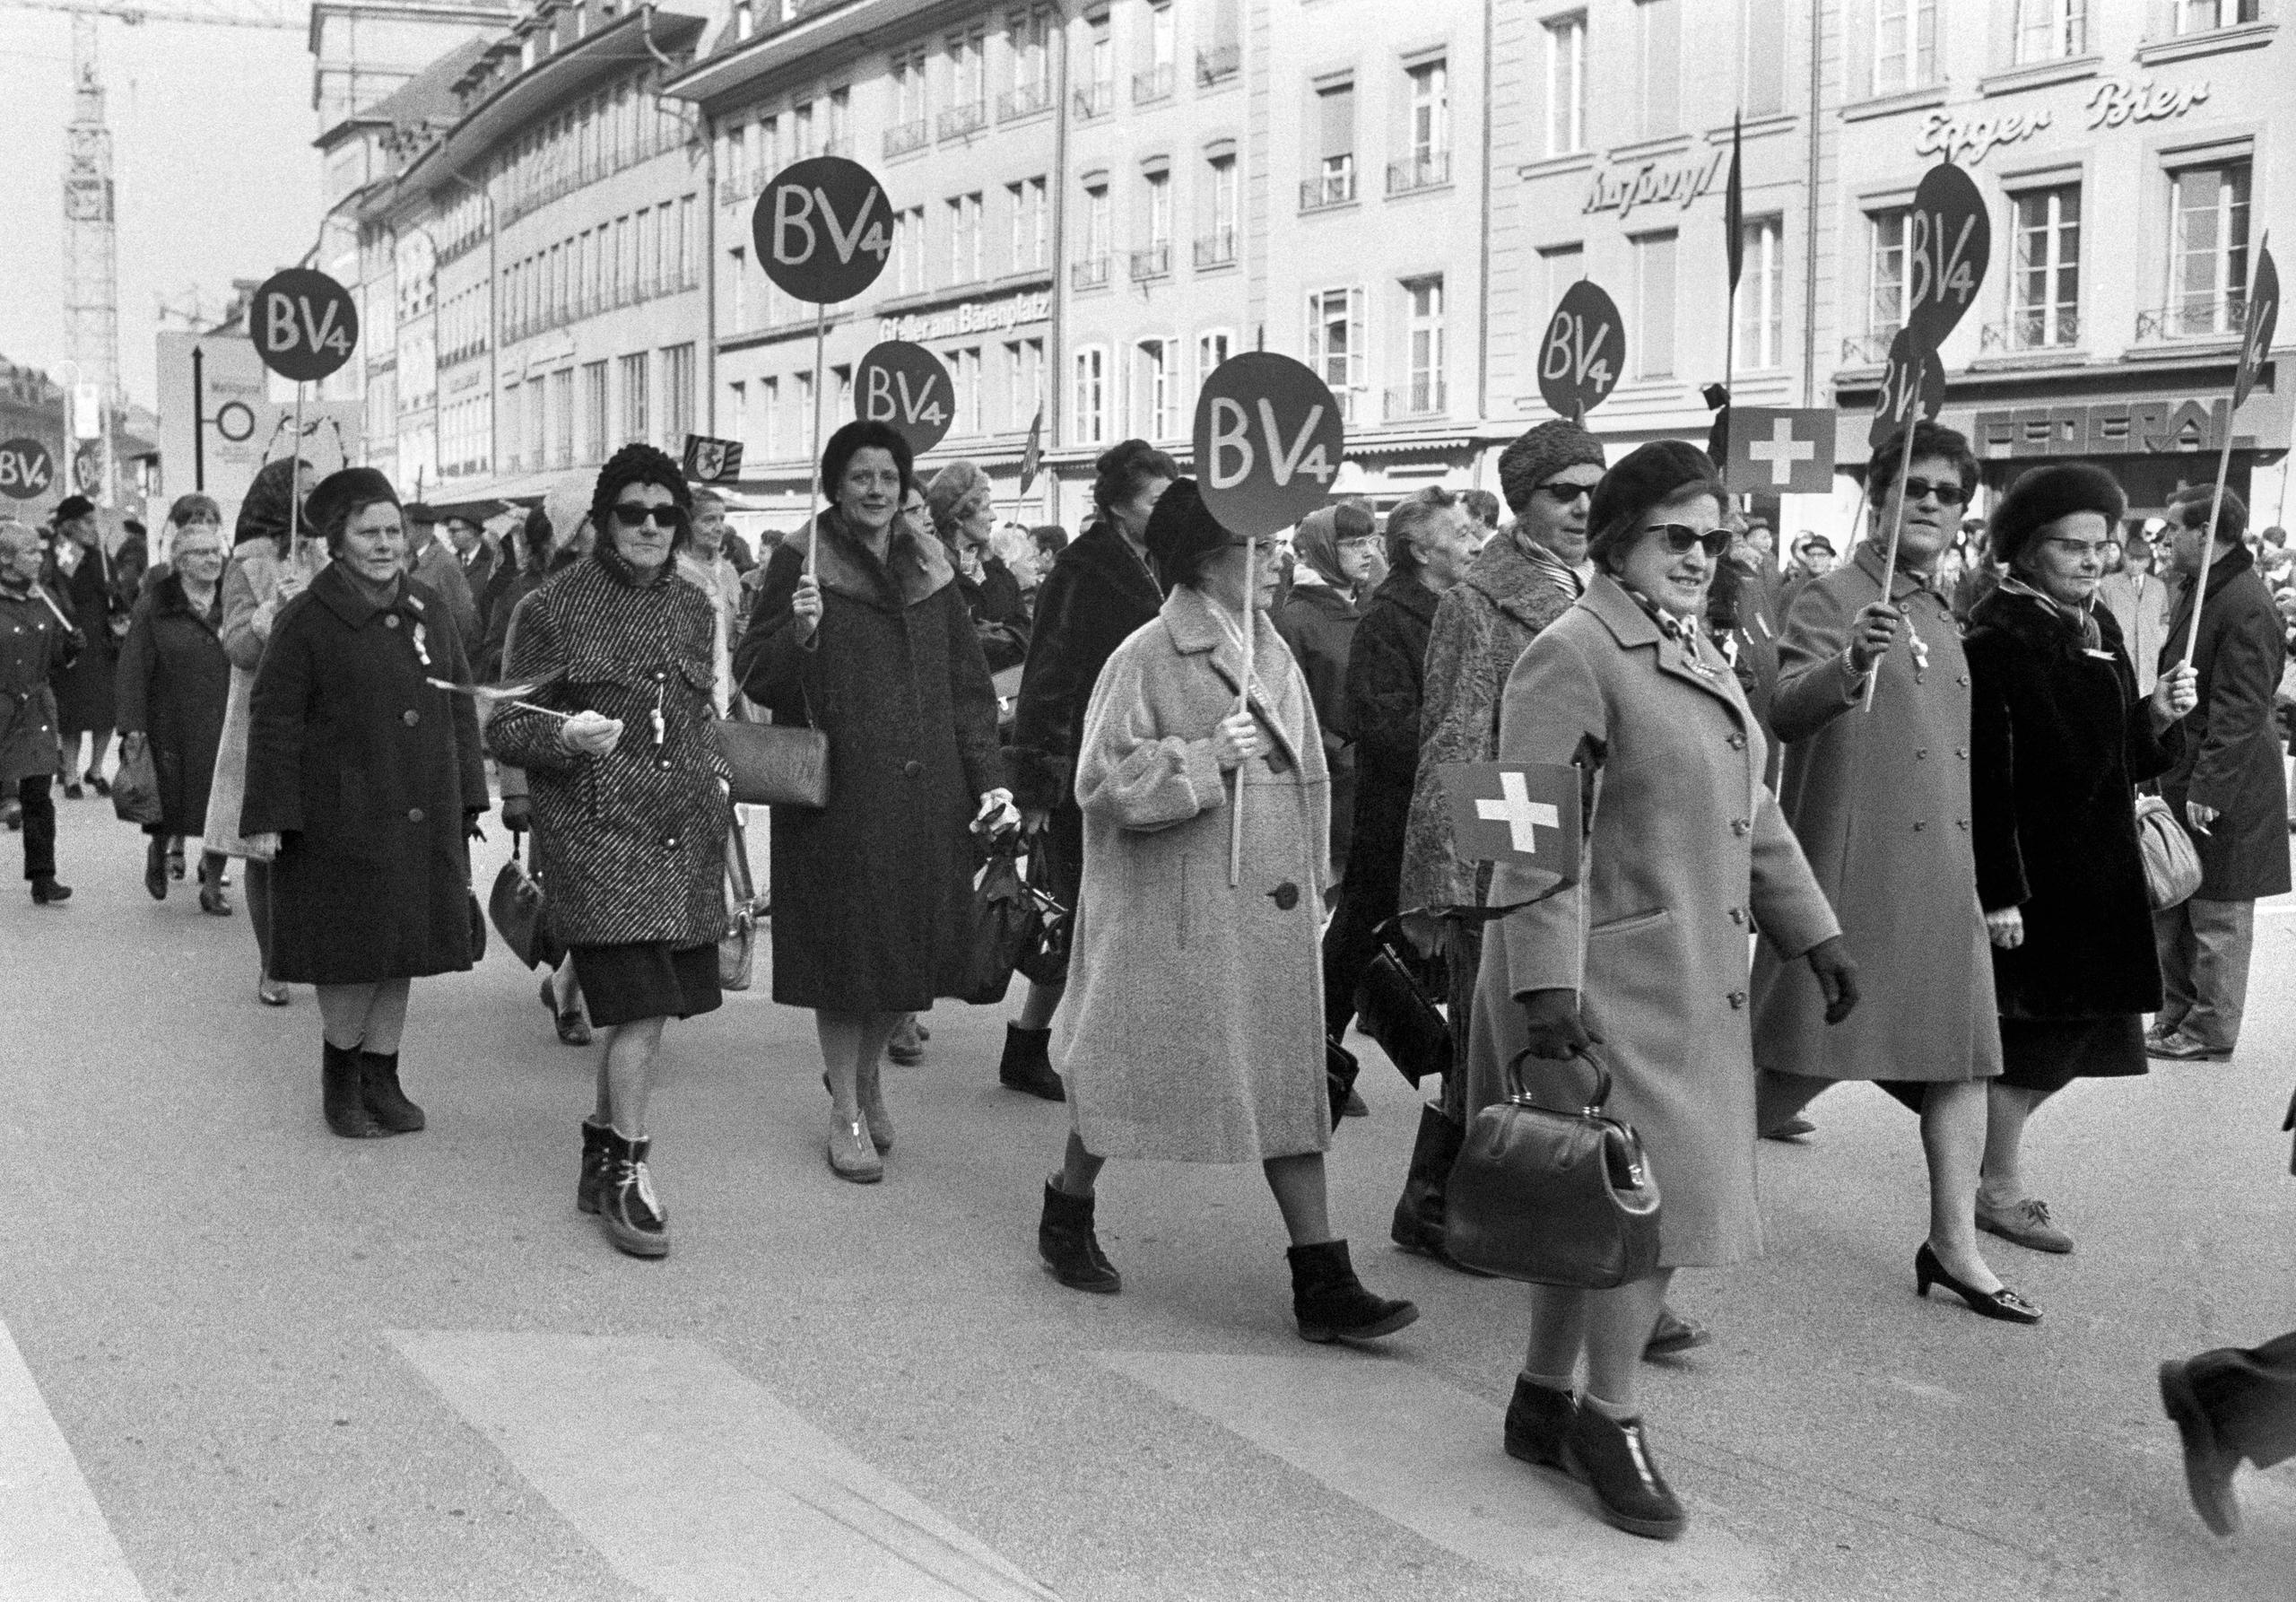 「BV4」と書かれたプラカードを掲げて行進する大勢の女性たち